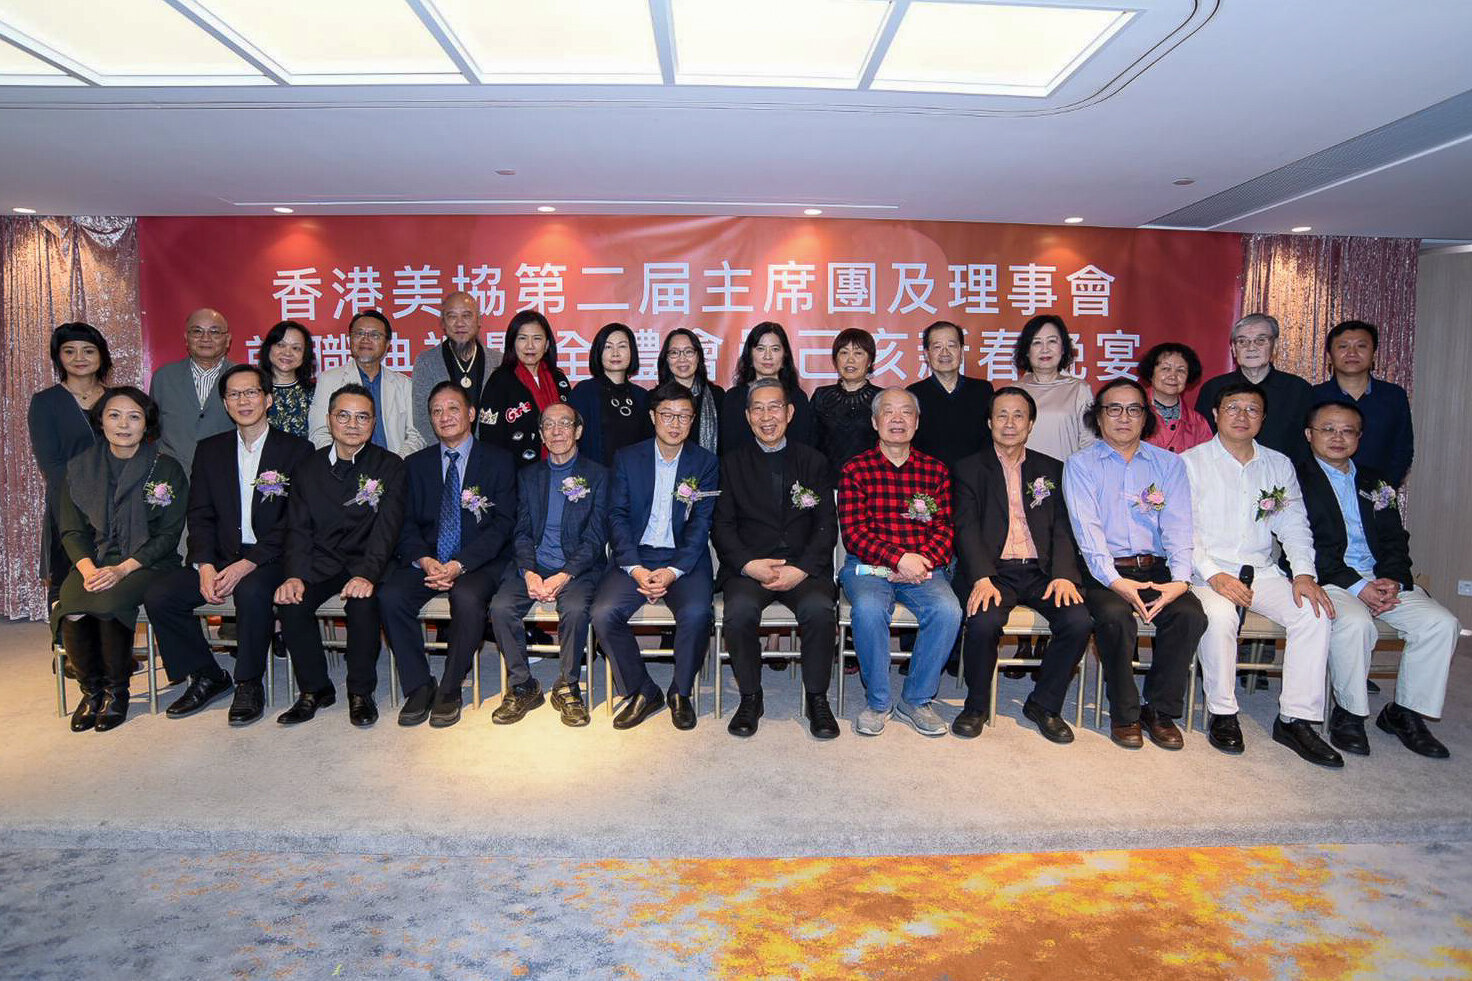  香港美協第二屆理事會就職典禮會員合照（二） 